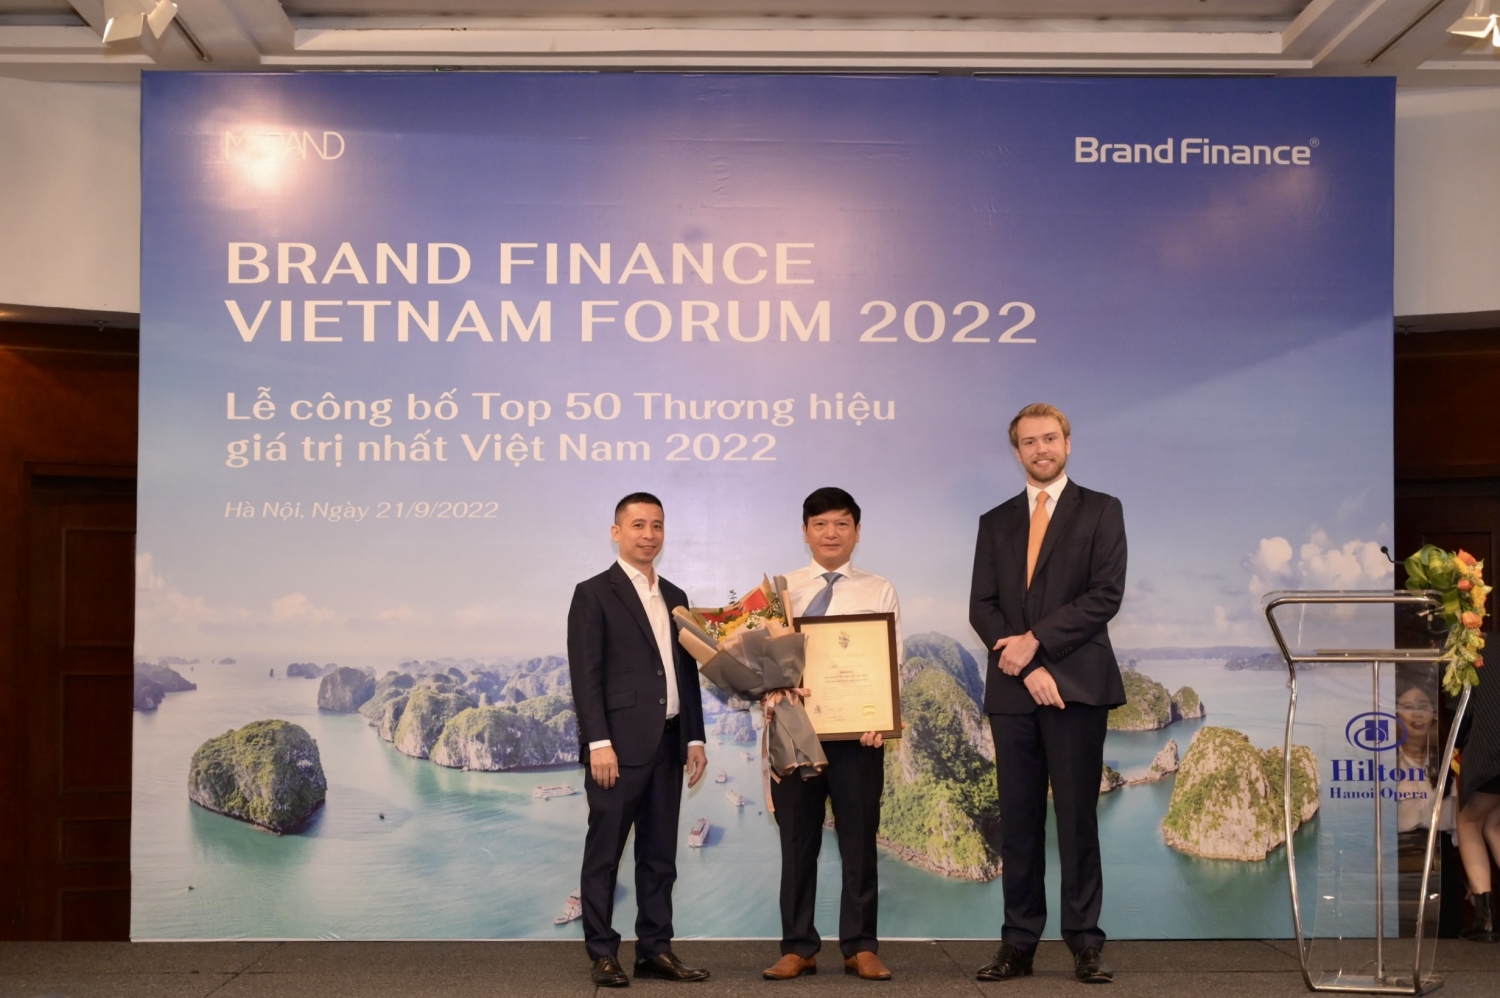 Ông Lê Anh Chiến - Phó Trưởng Ban TT&VHDN đại diện Petrovietnam nhận vinh danh Top 10 thương hiệu giá trị nhất Việt Nam